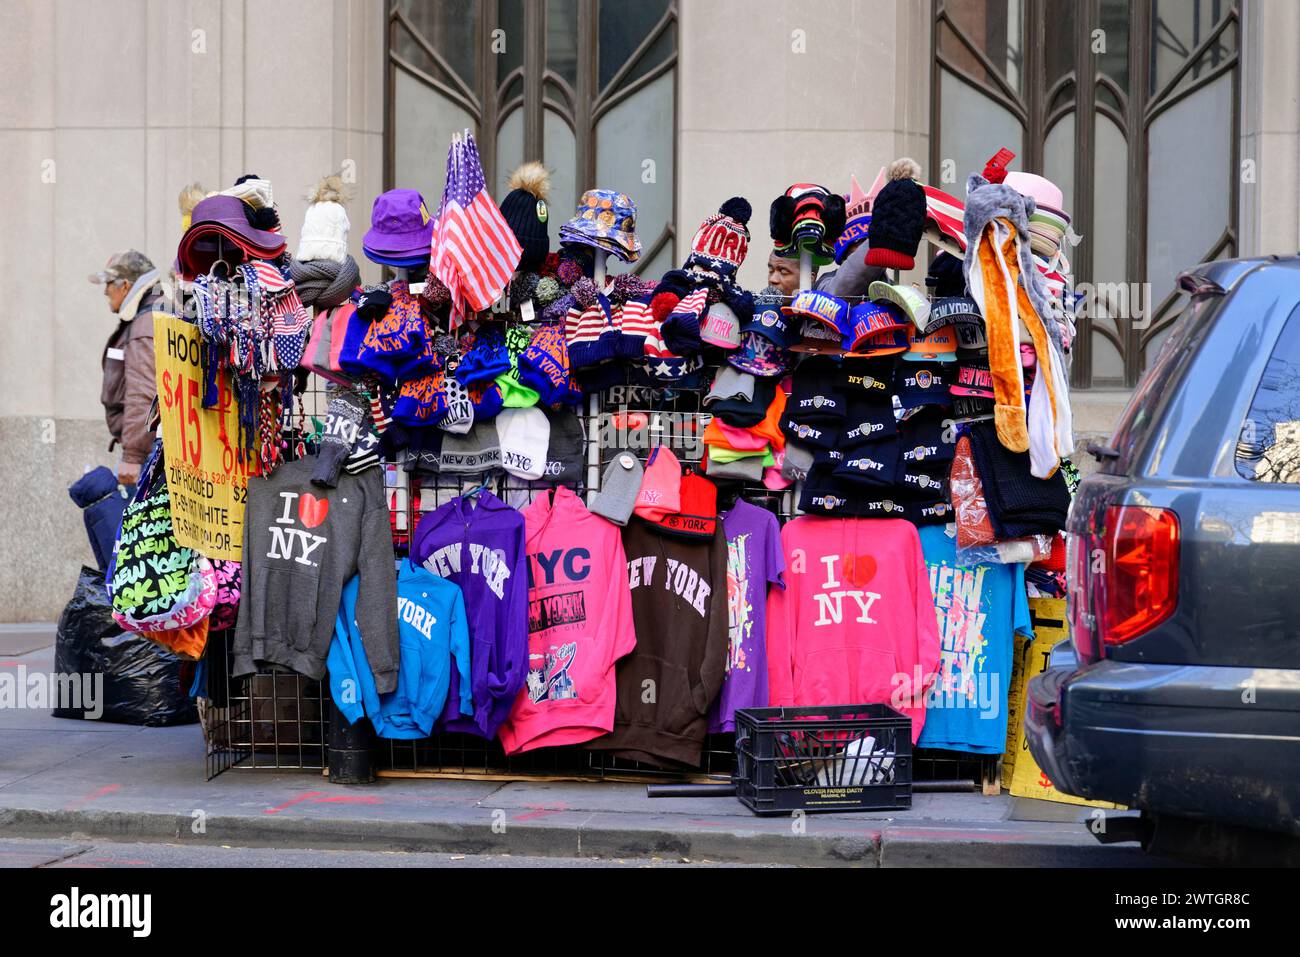 Ein farbenfroher Souvenirstand auf dem Bürgersteig in New York, Manhattan, New York City, New York, USA, Nordamerika Stockfoto